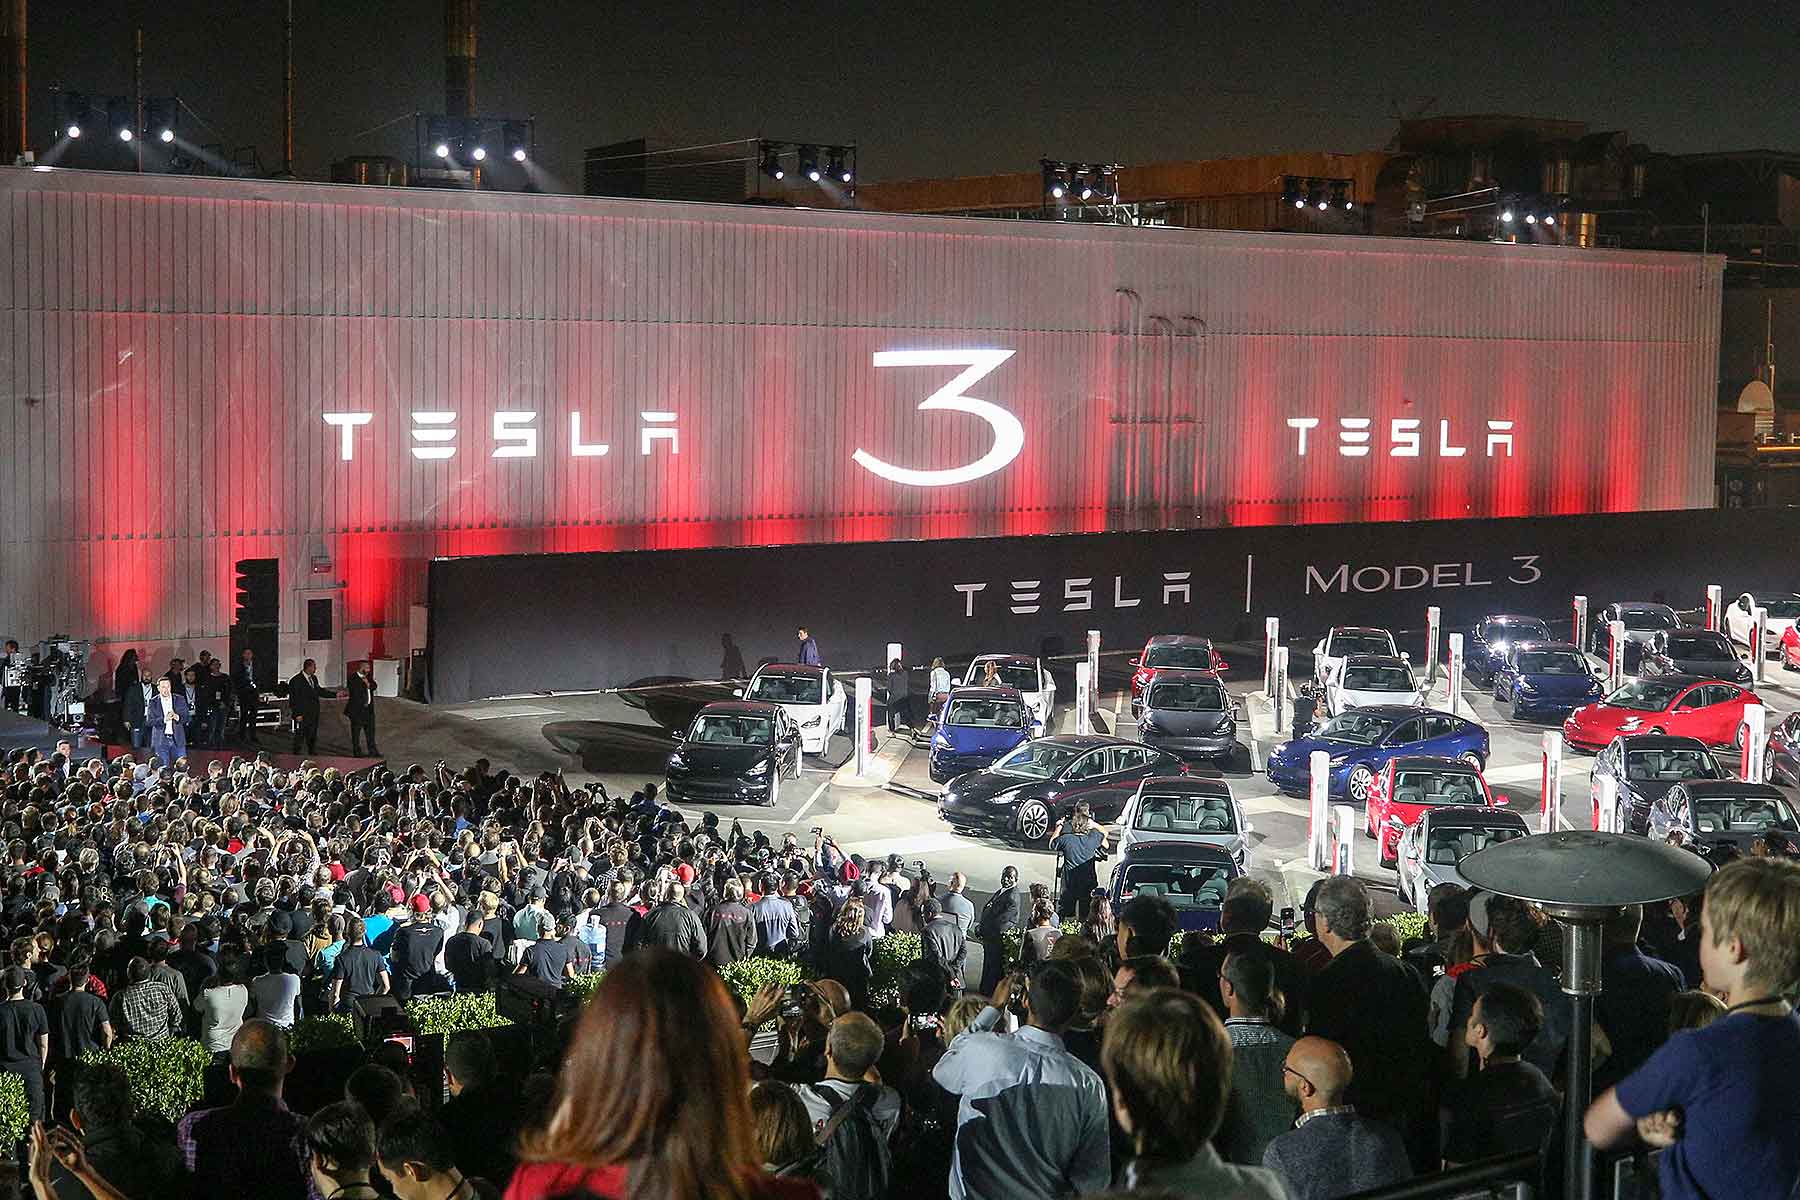 Tesla Model 3 delivery event